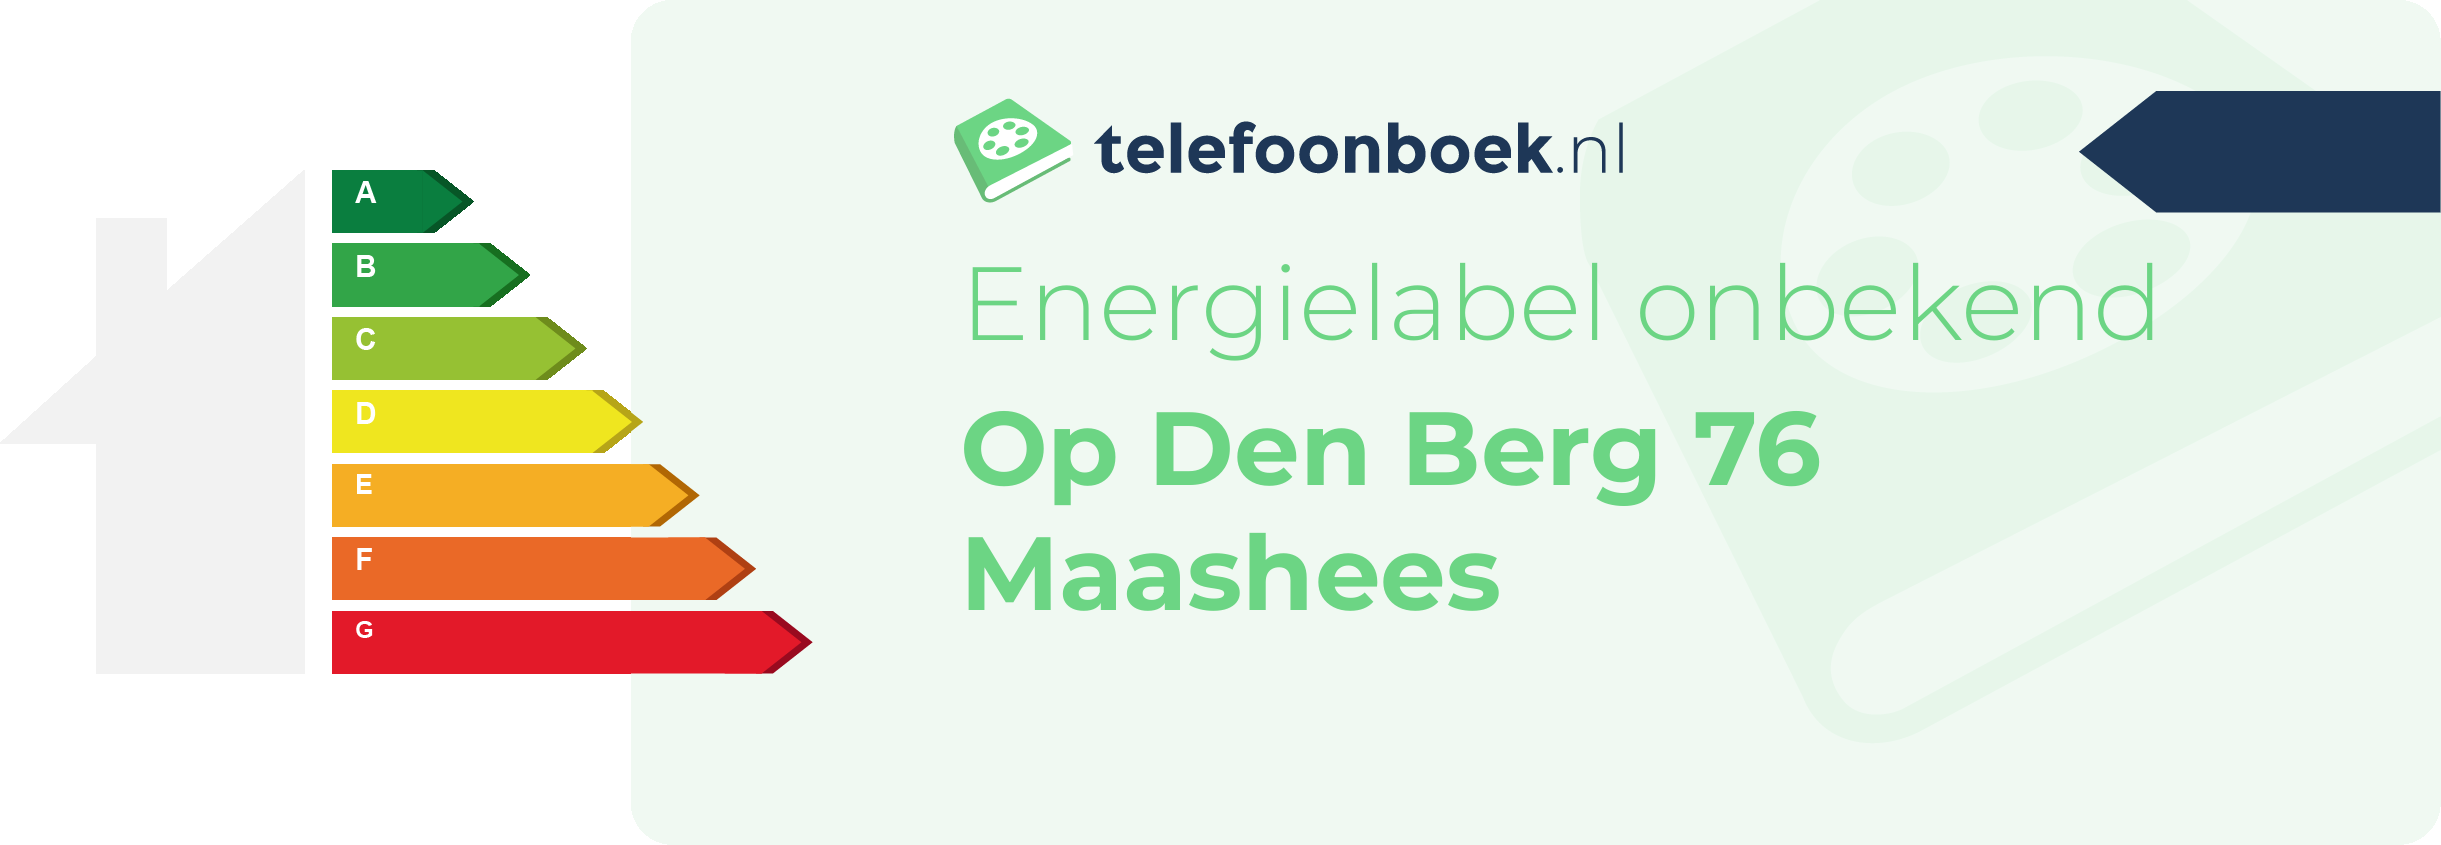 Energielabel Op Den Berg 76 Maashees